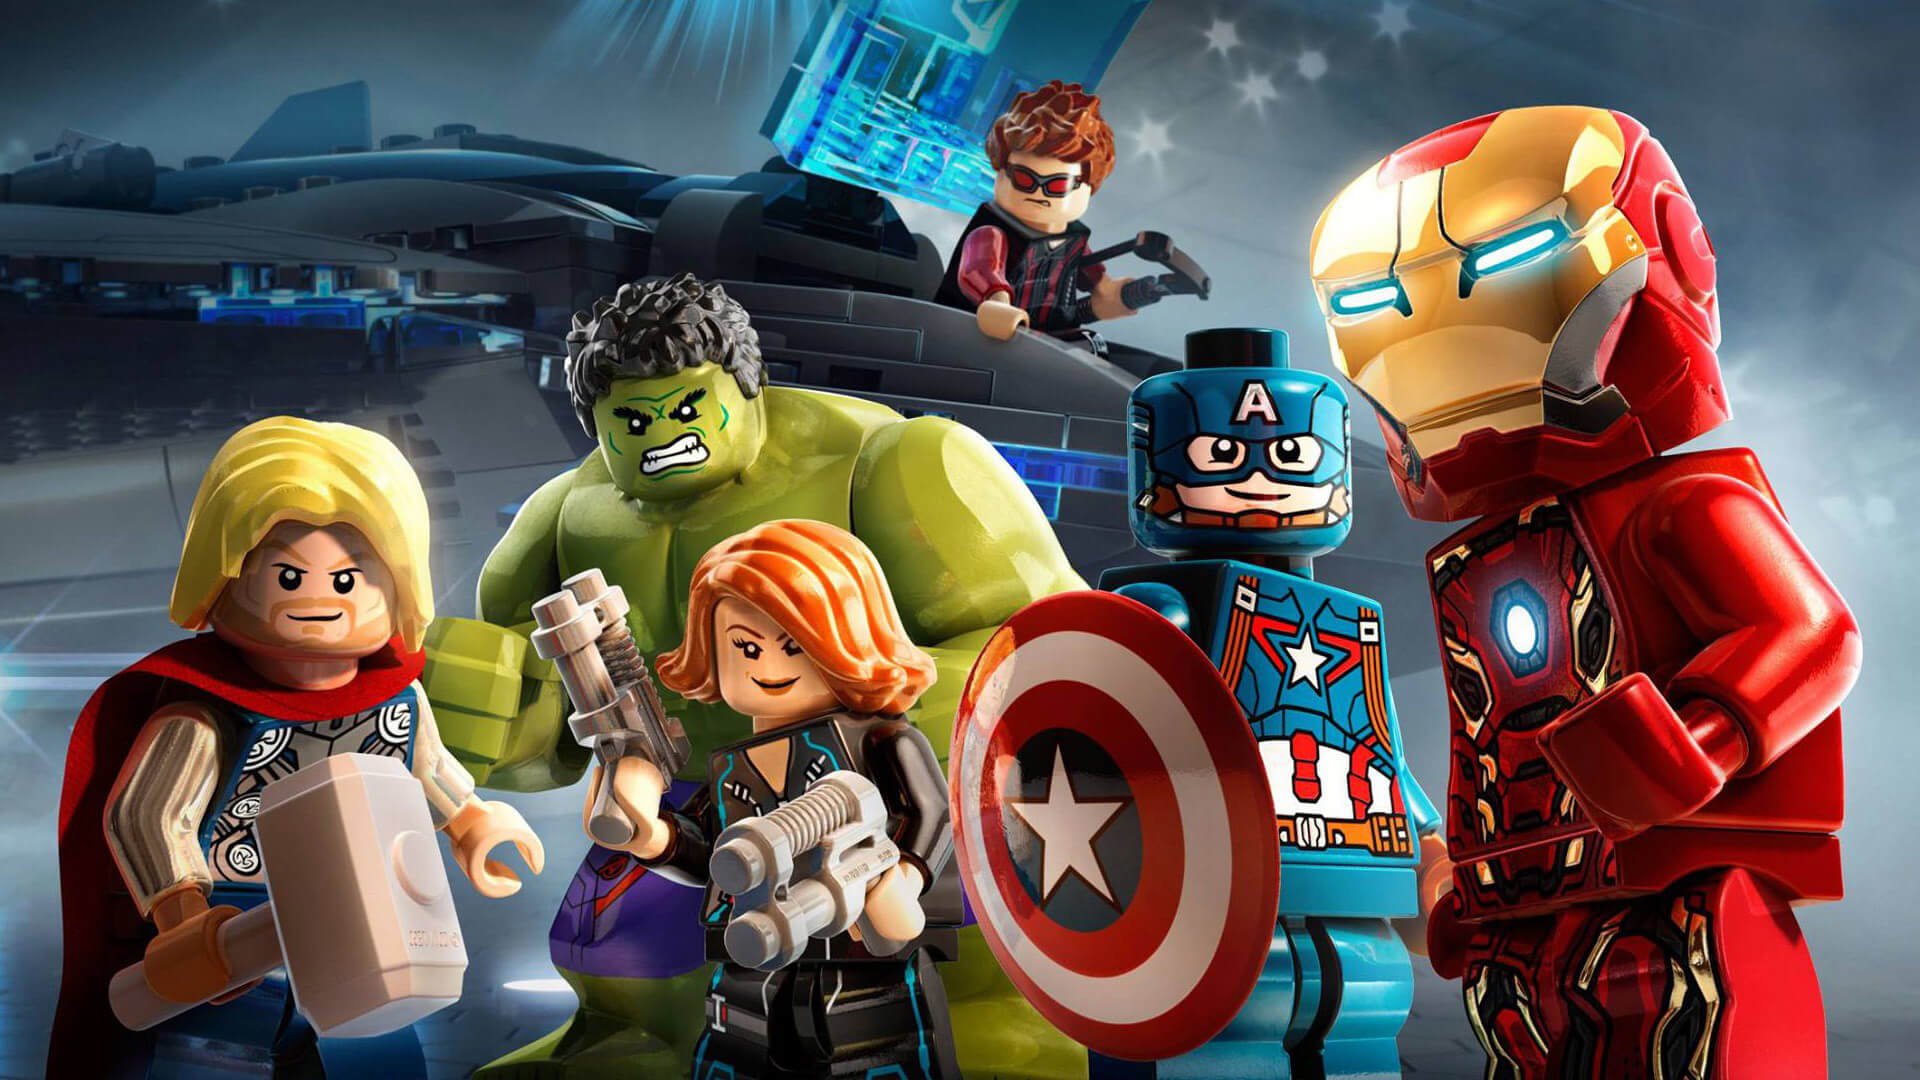 LEGO Marvel Avengers